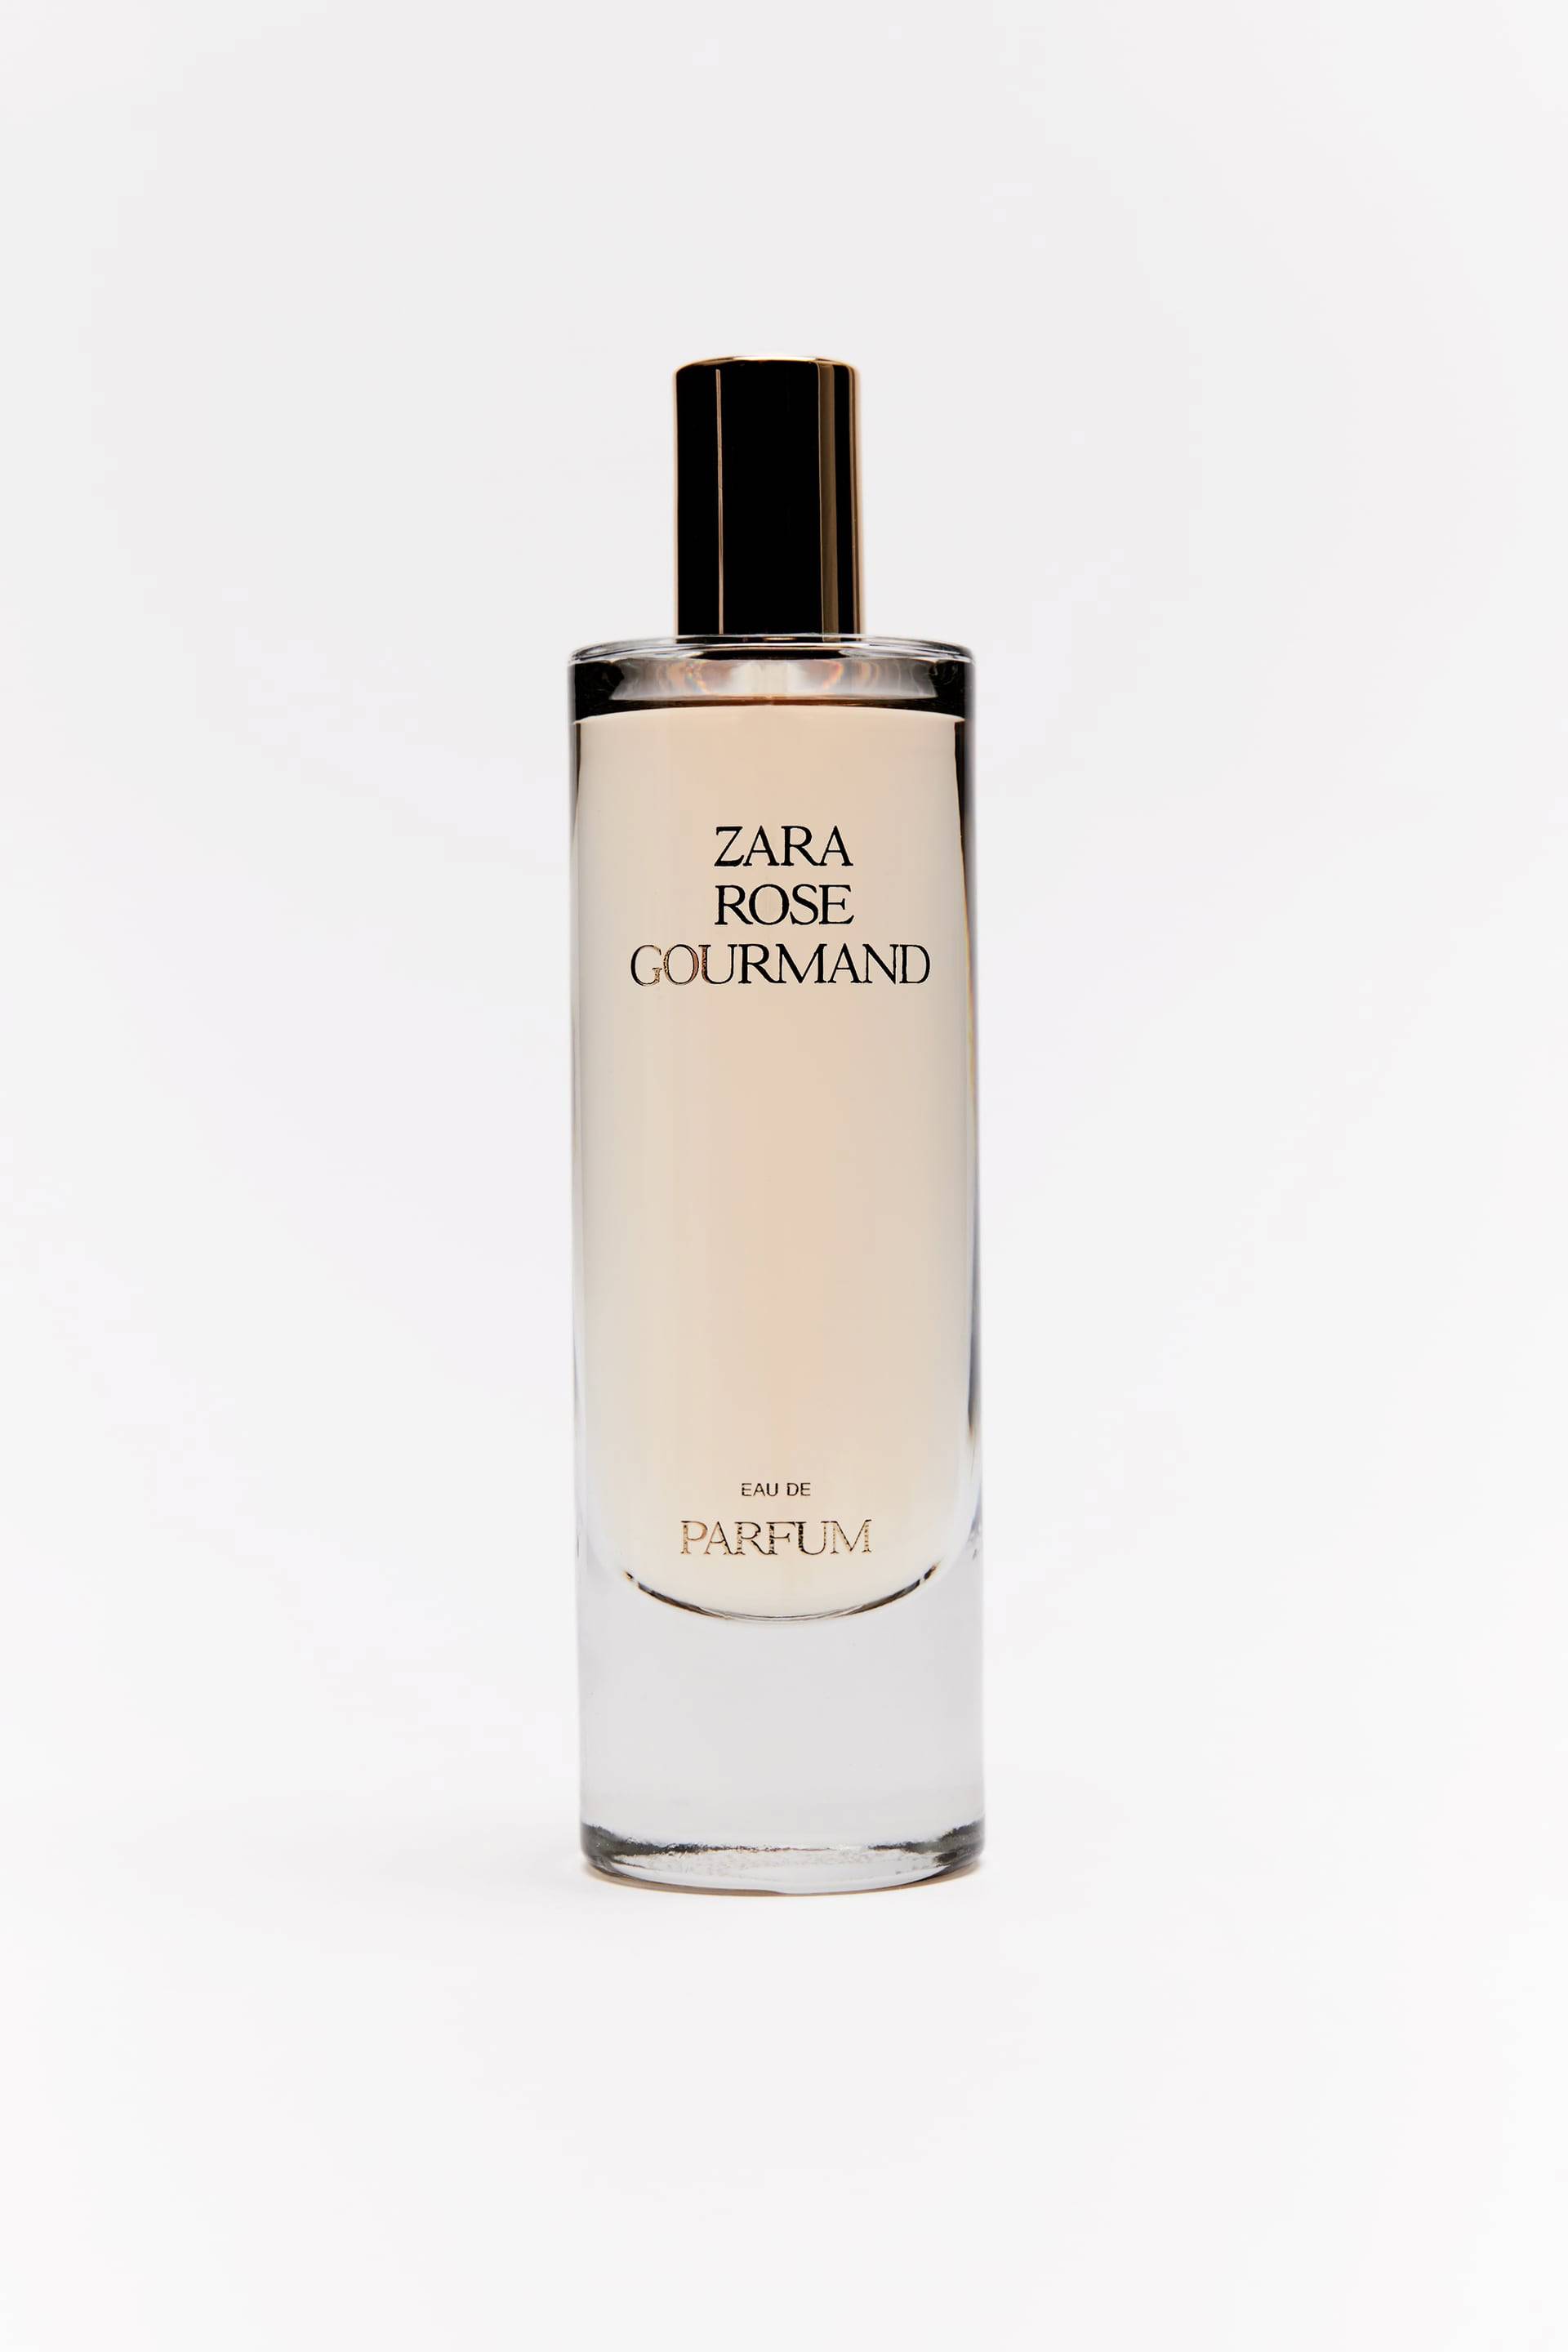 Perfume de Zara Rose Gourmand